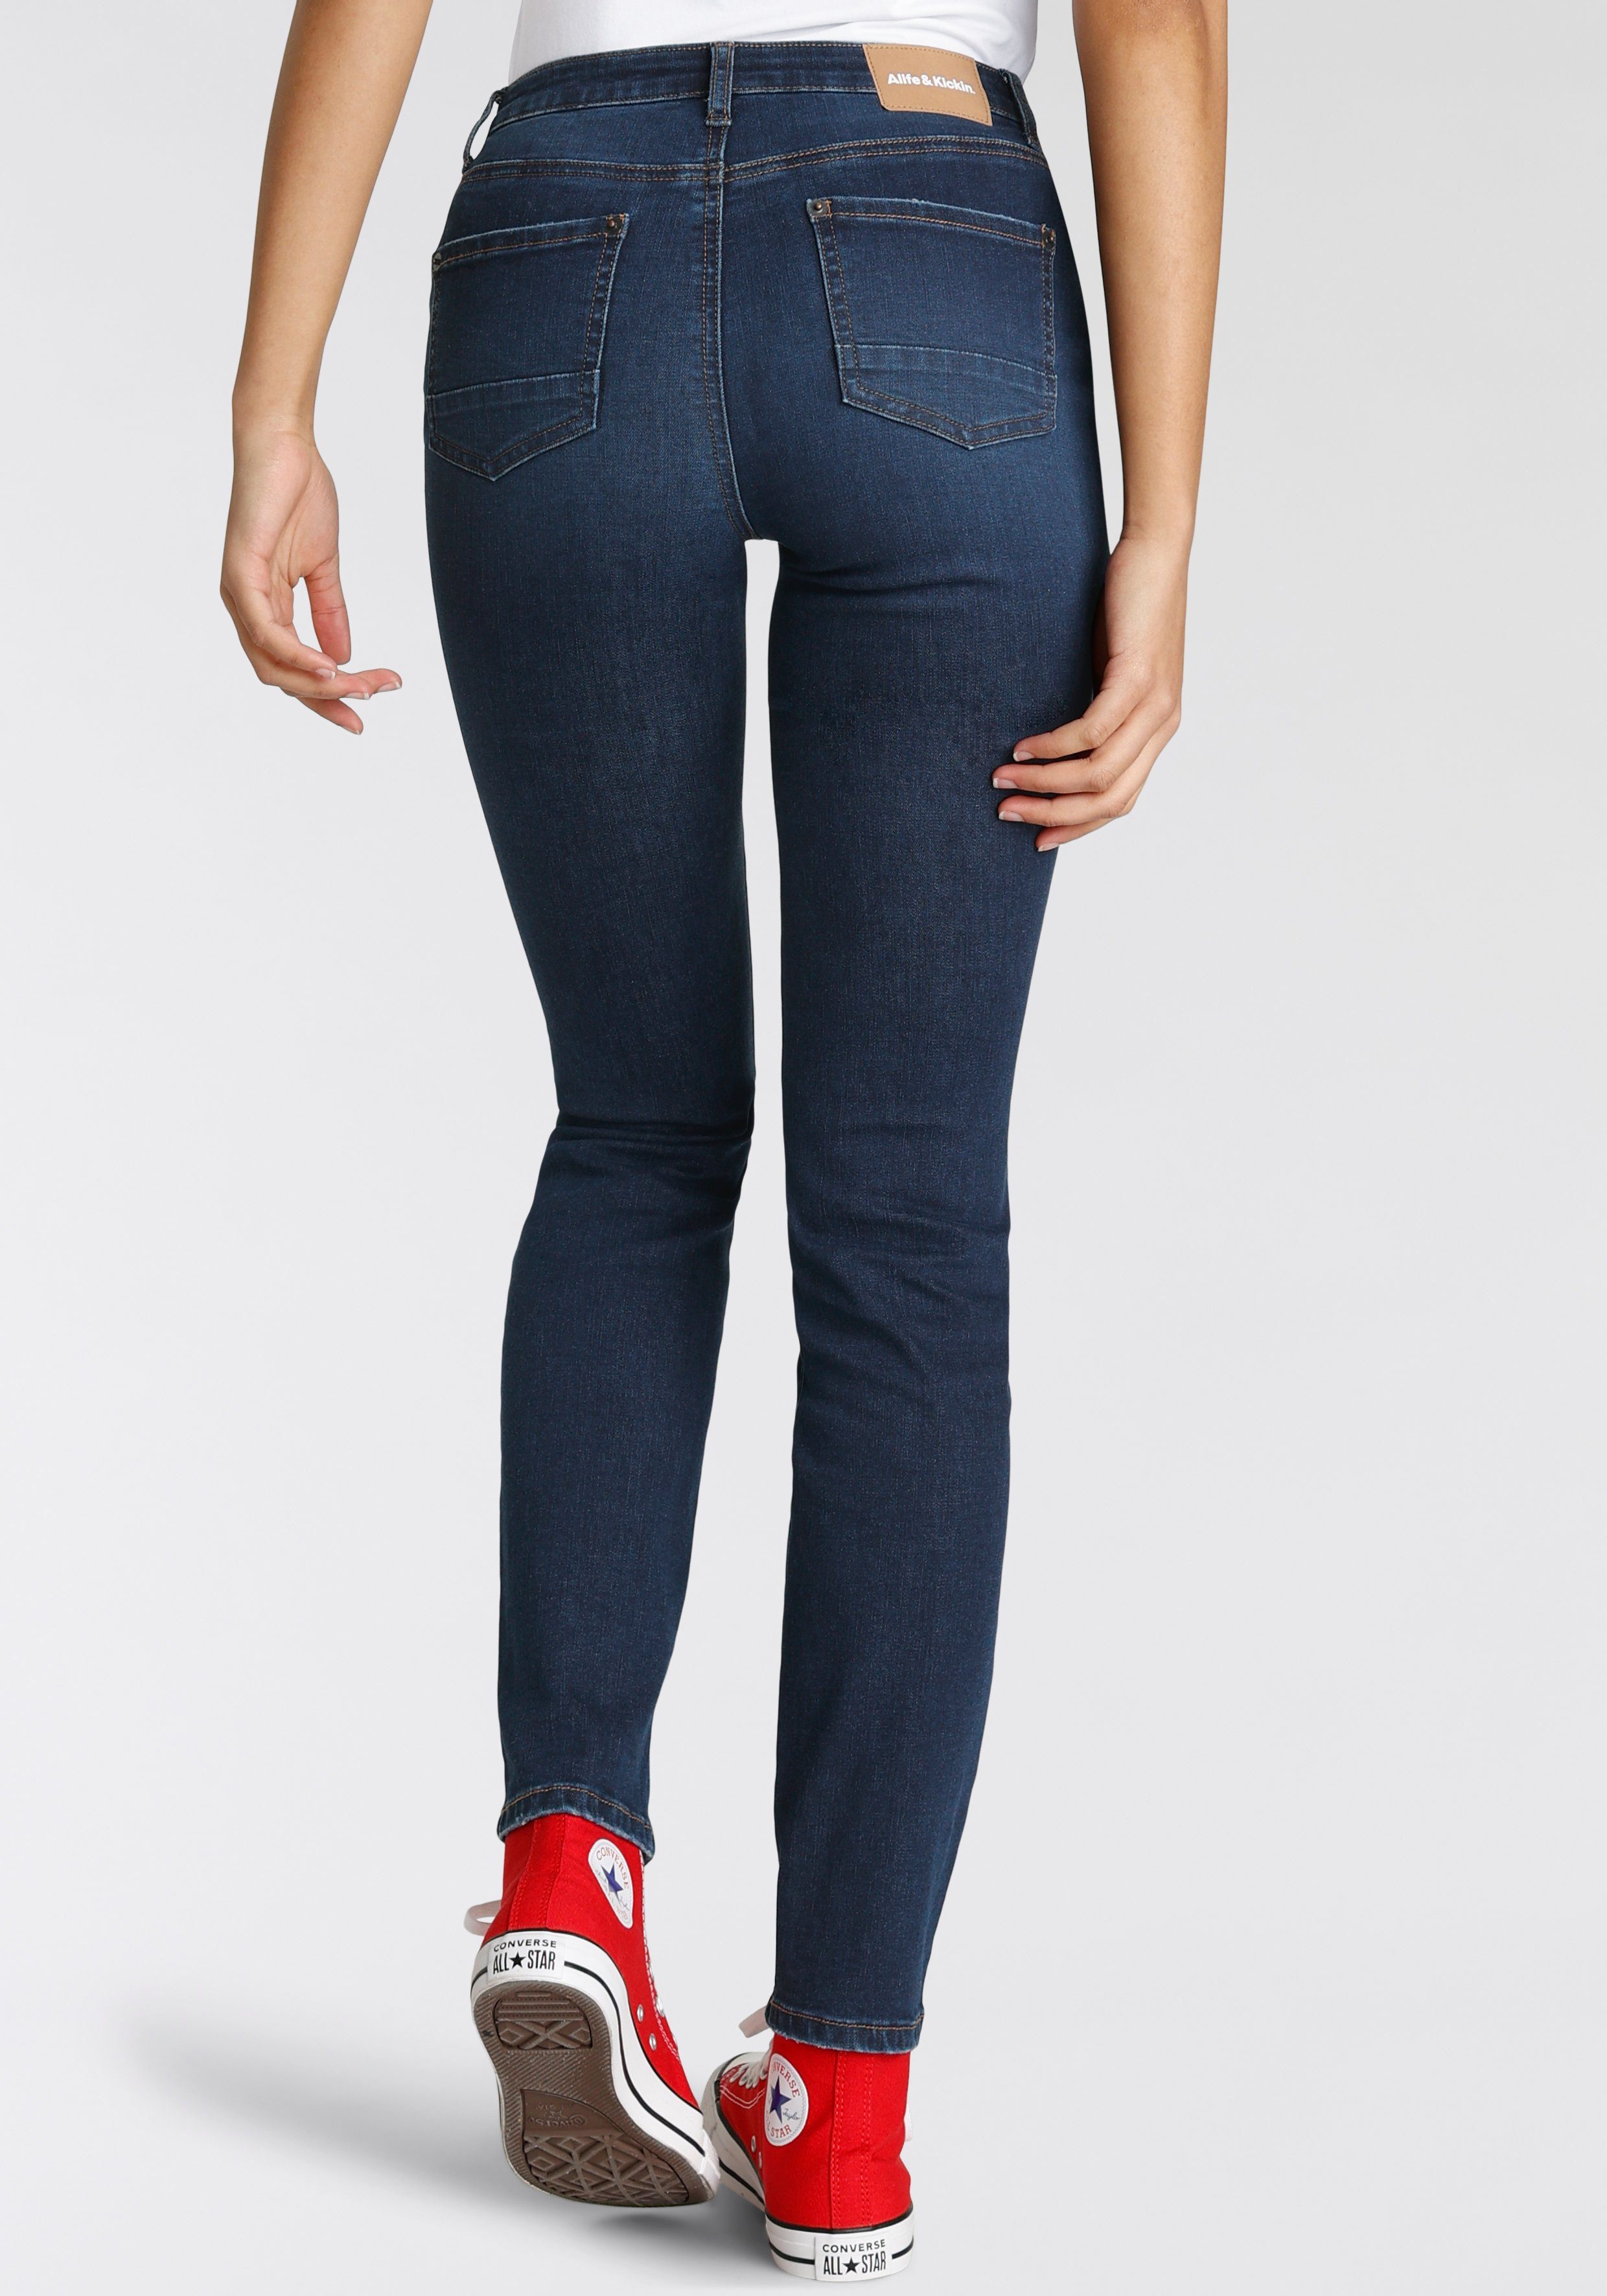 High-waist-Jeans KOLLEKTION used Kickin dark Alife & Slim-Fit NEUE NolaAK used blue